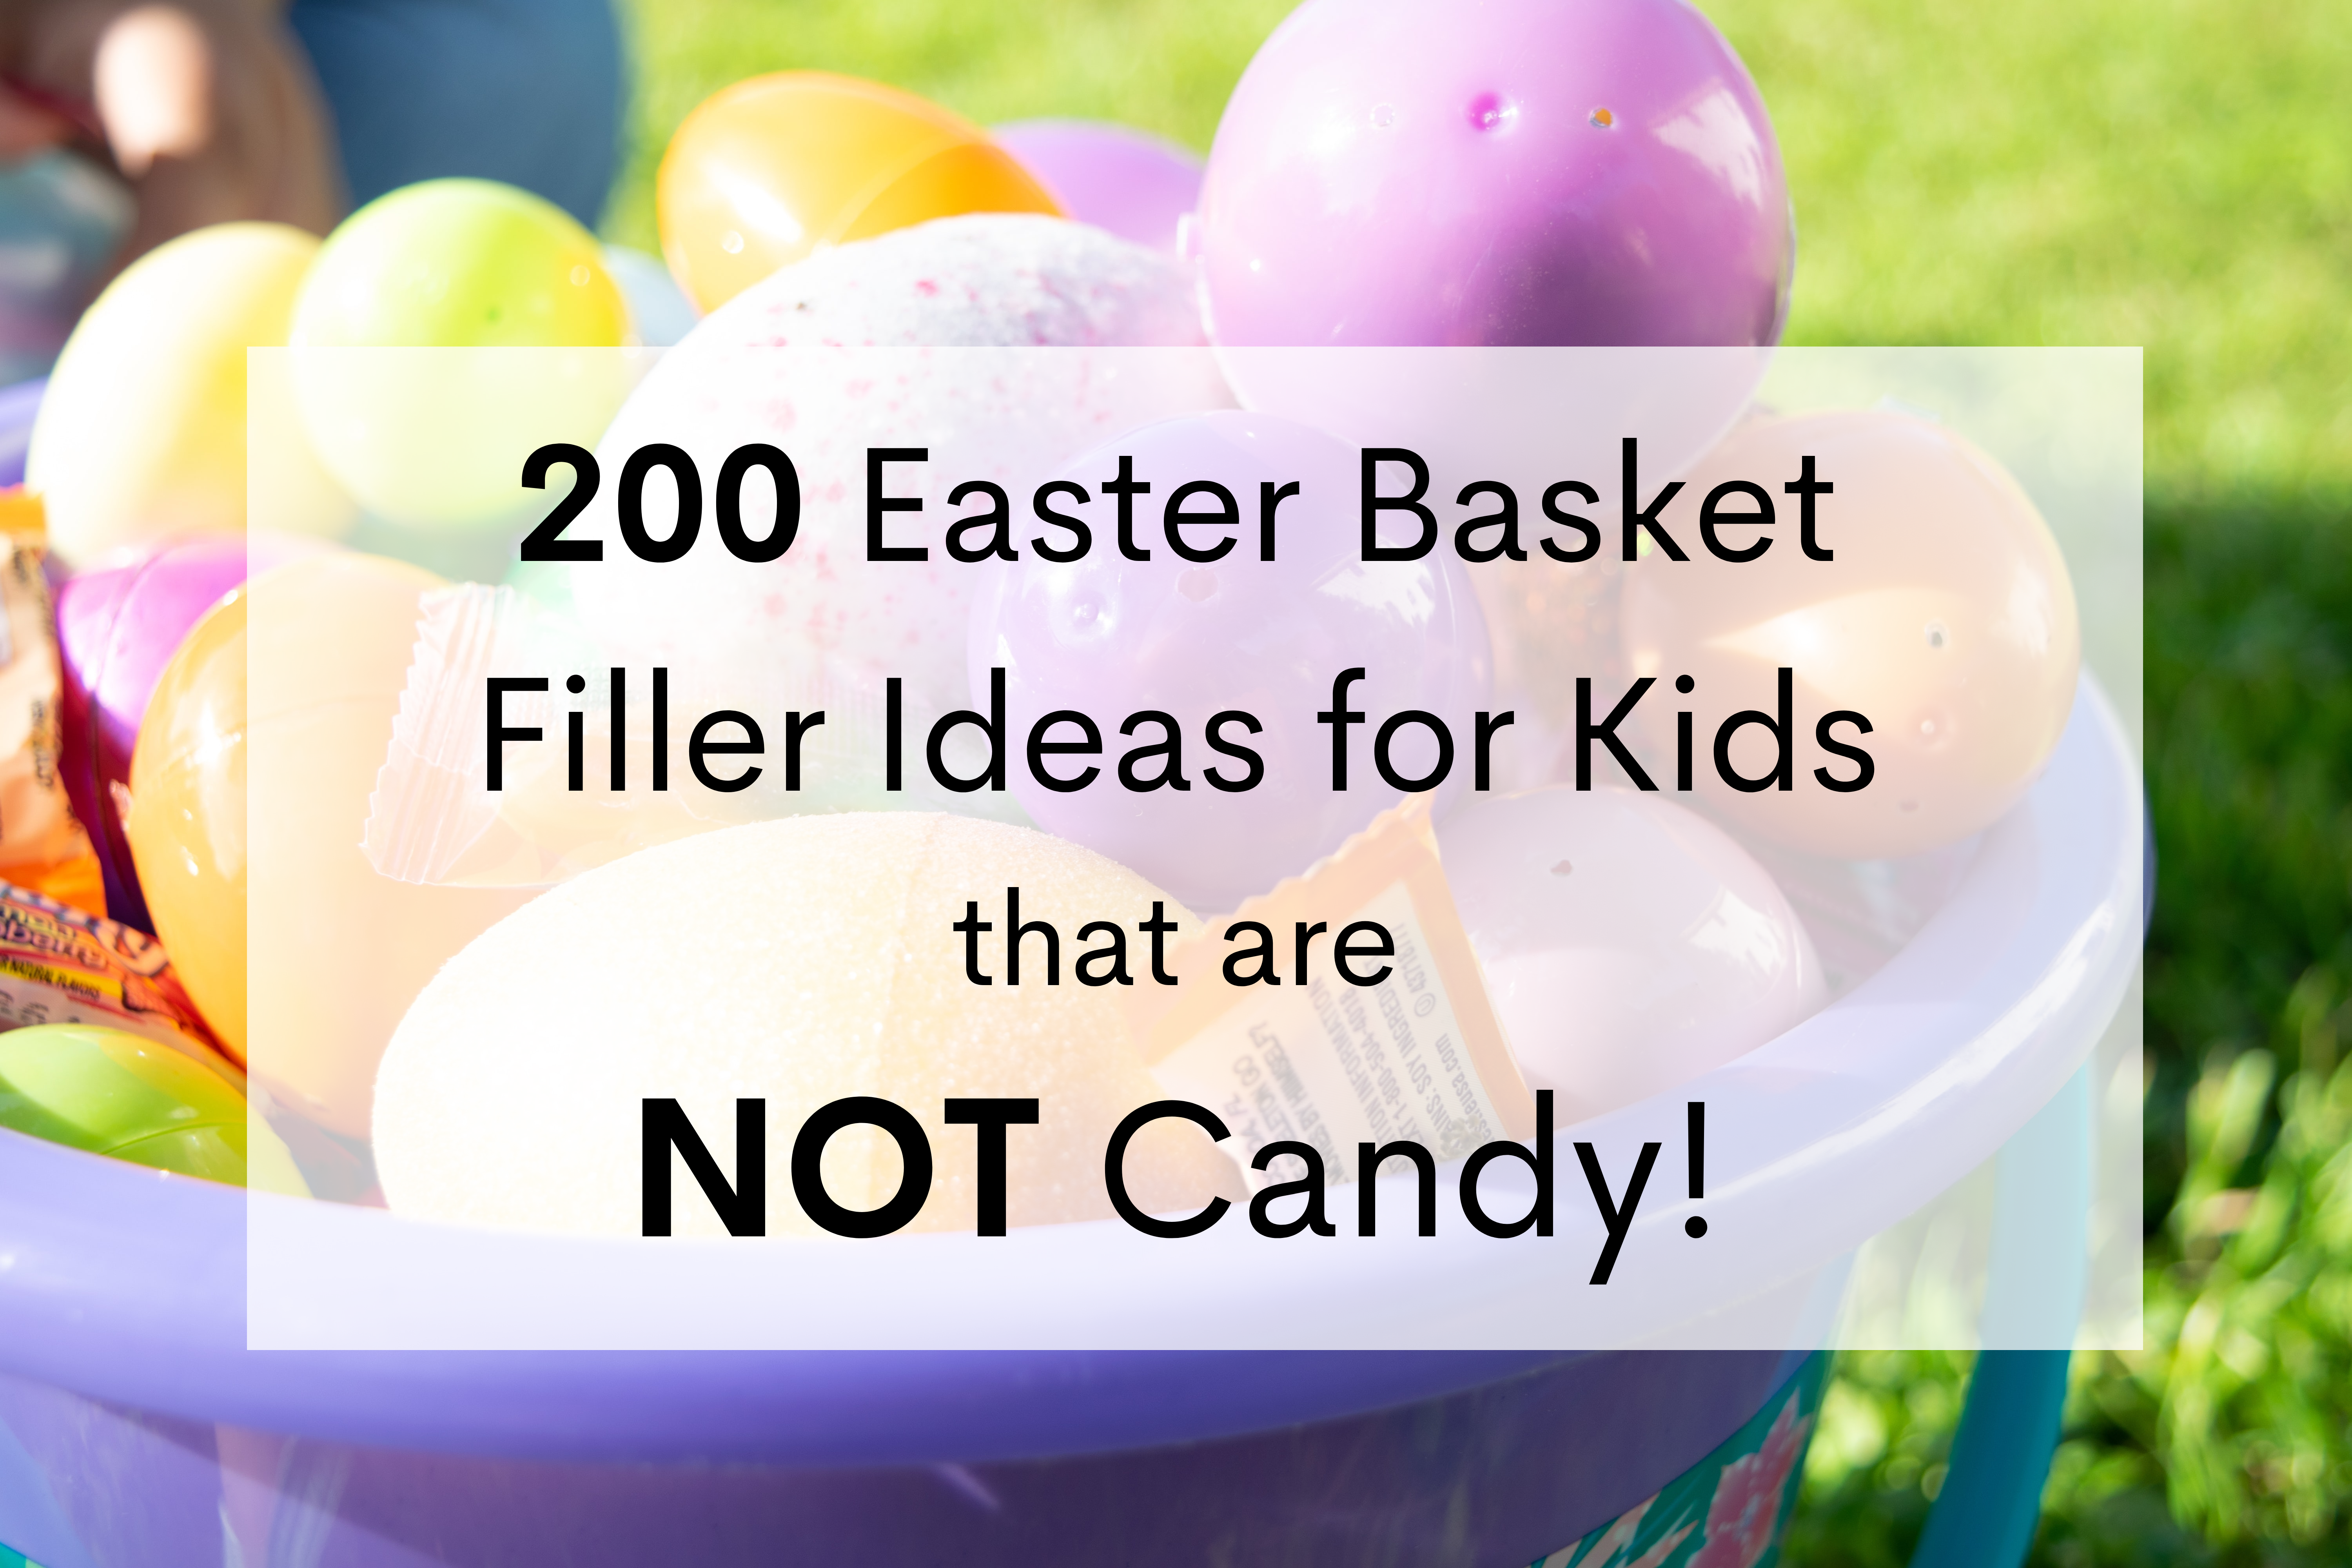 20 Non-Candy Easter Basket Filler Ideas Tips